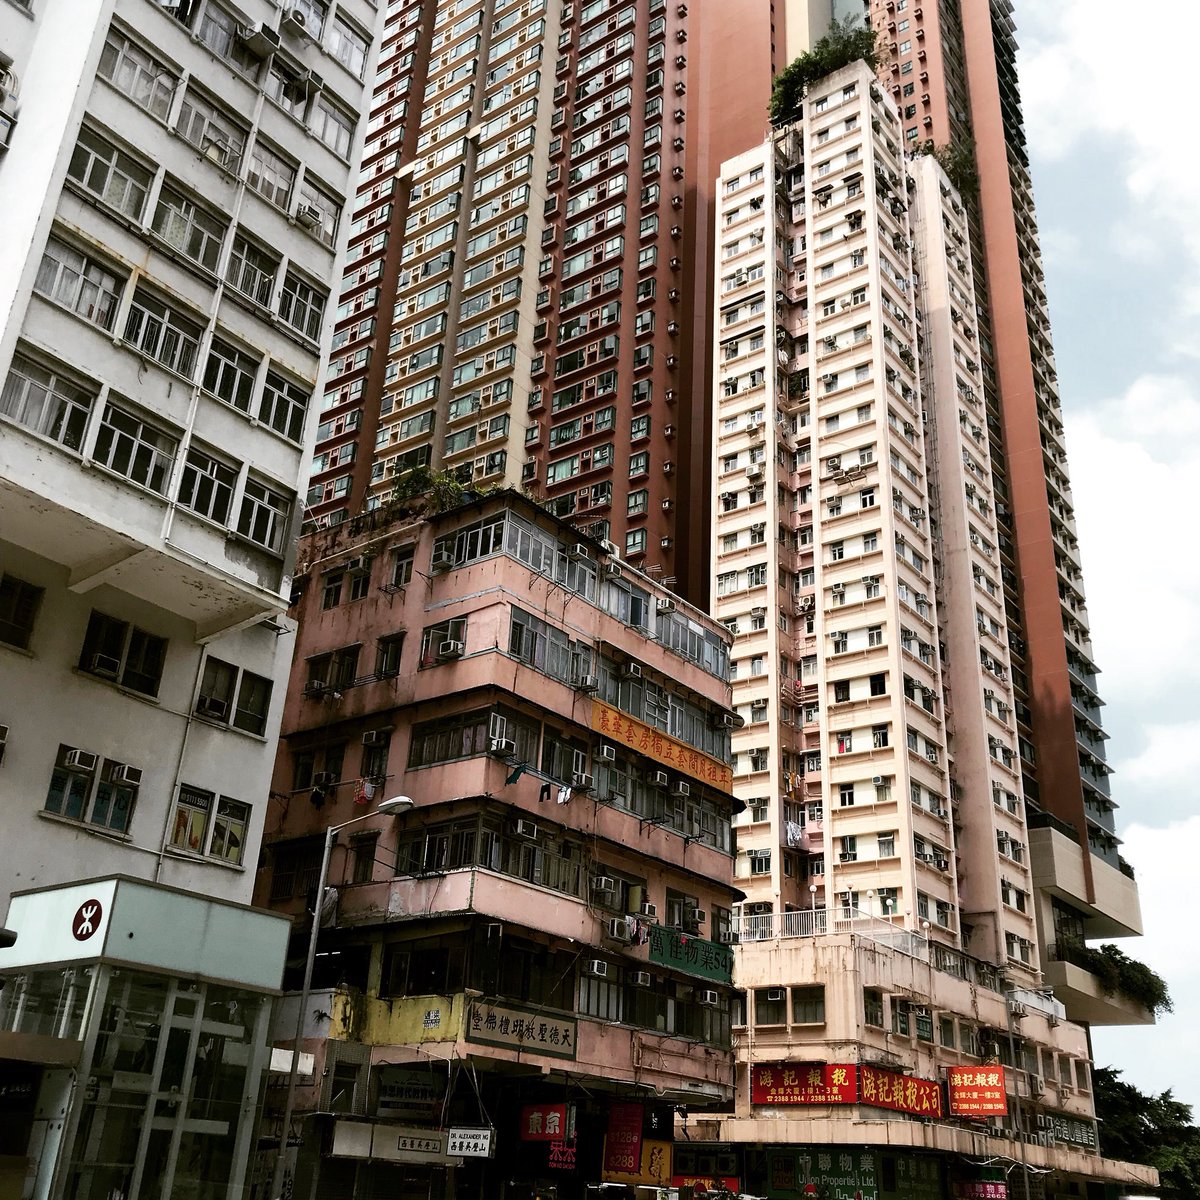 ヤナイコウヘイ 手作り腕時計 手作り時計 スチームパンク腕時計 古い建物と新しい建物のコントラスト 時の流れを感じる風景が好き Hongkong 香港